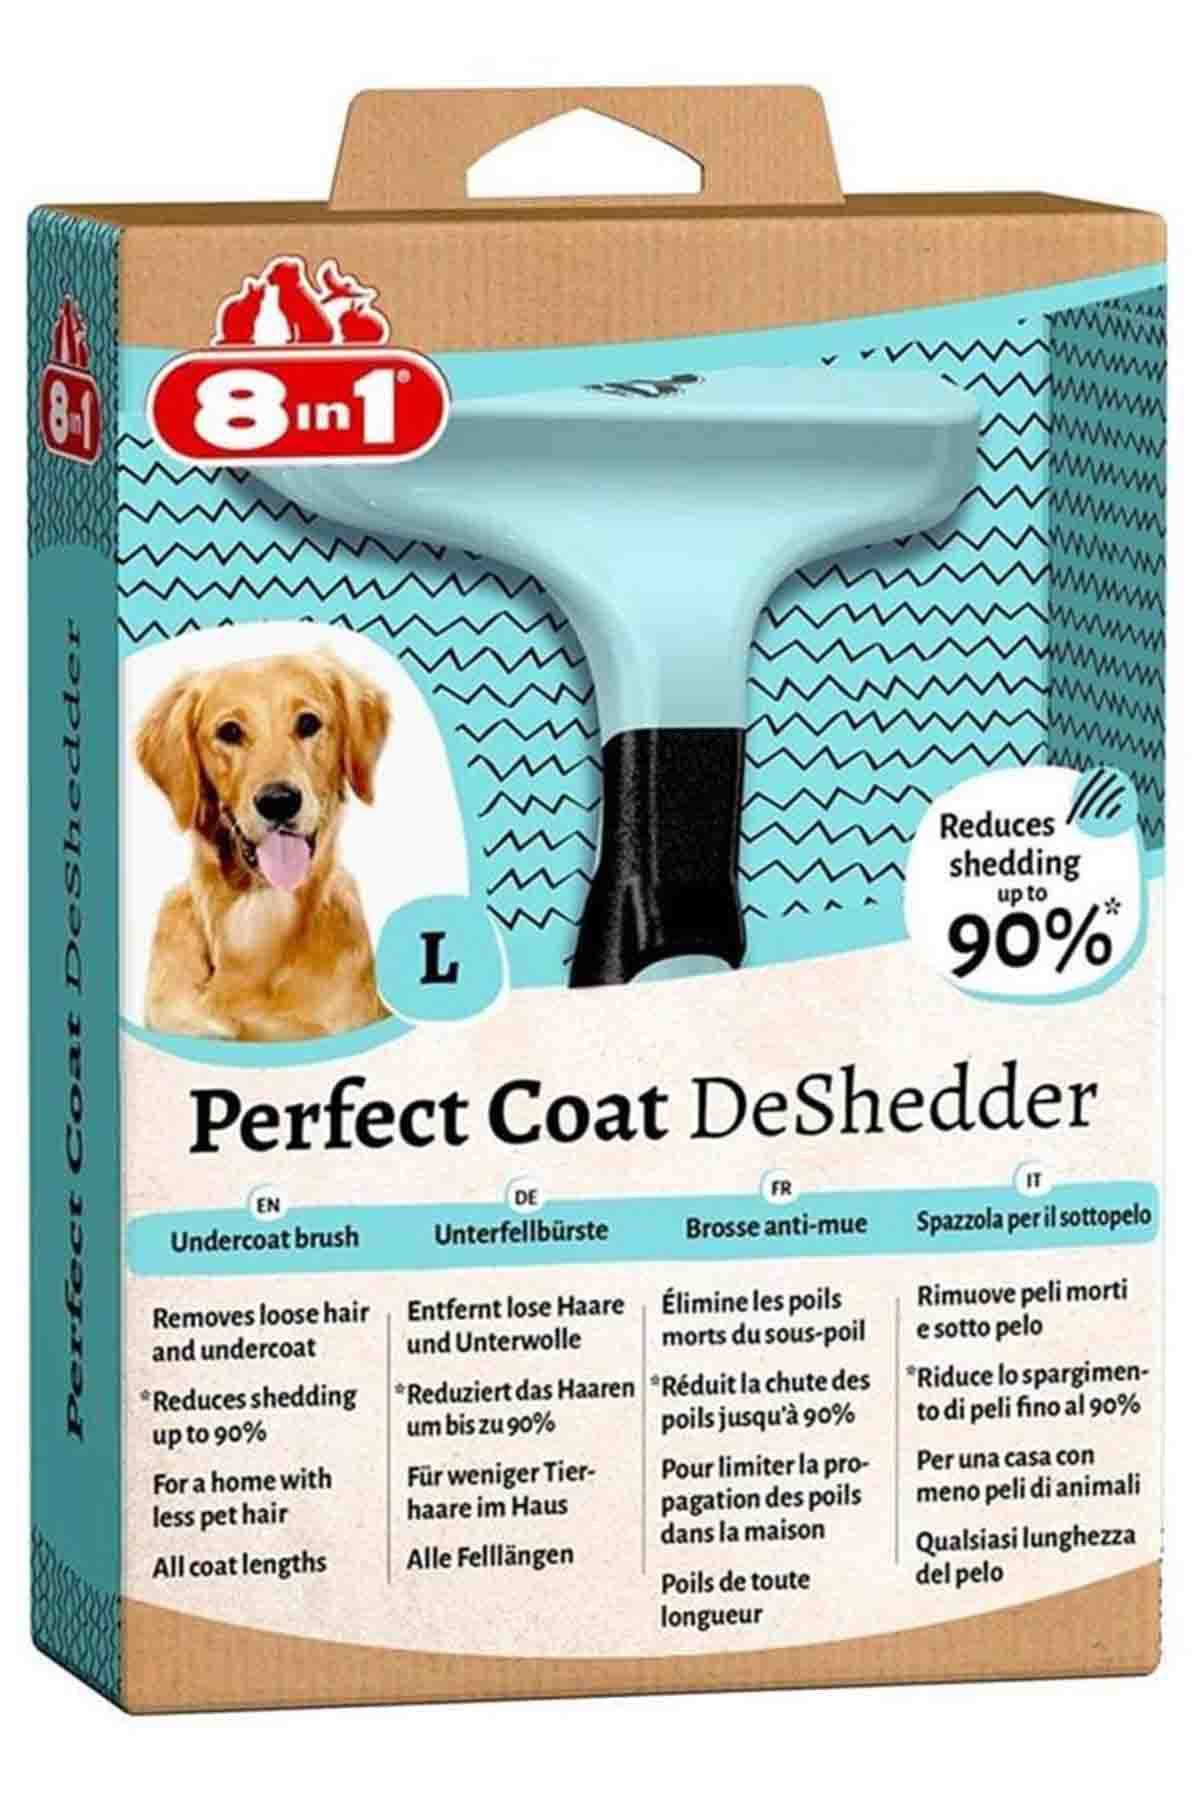 8in1 Perfect Coat DeShedder Furminator Büyük Irk Uzun Tüylü Köpek Tarağı (L)